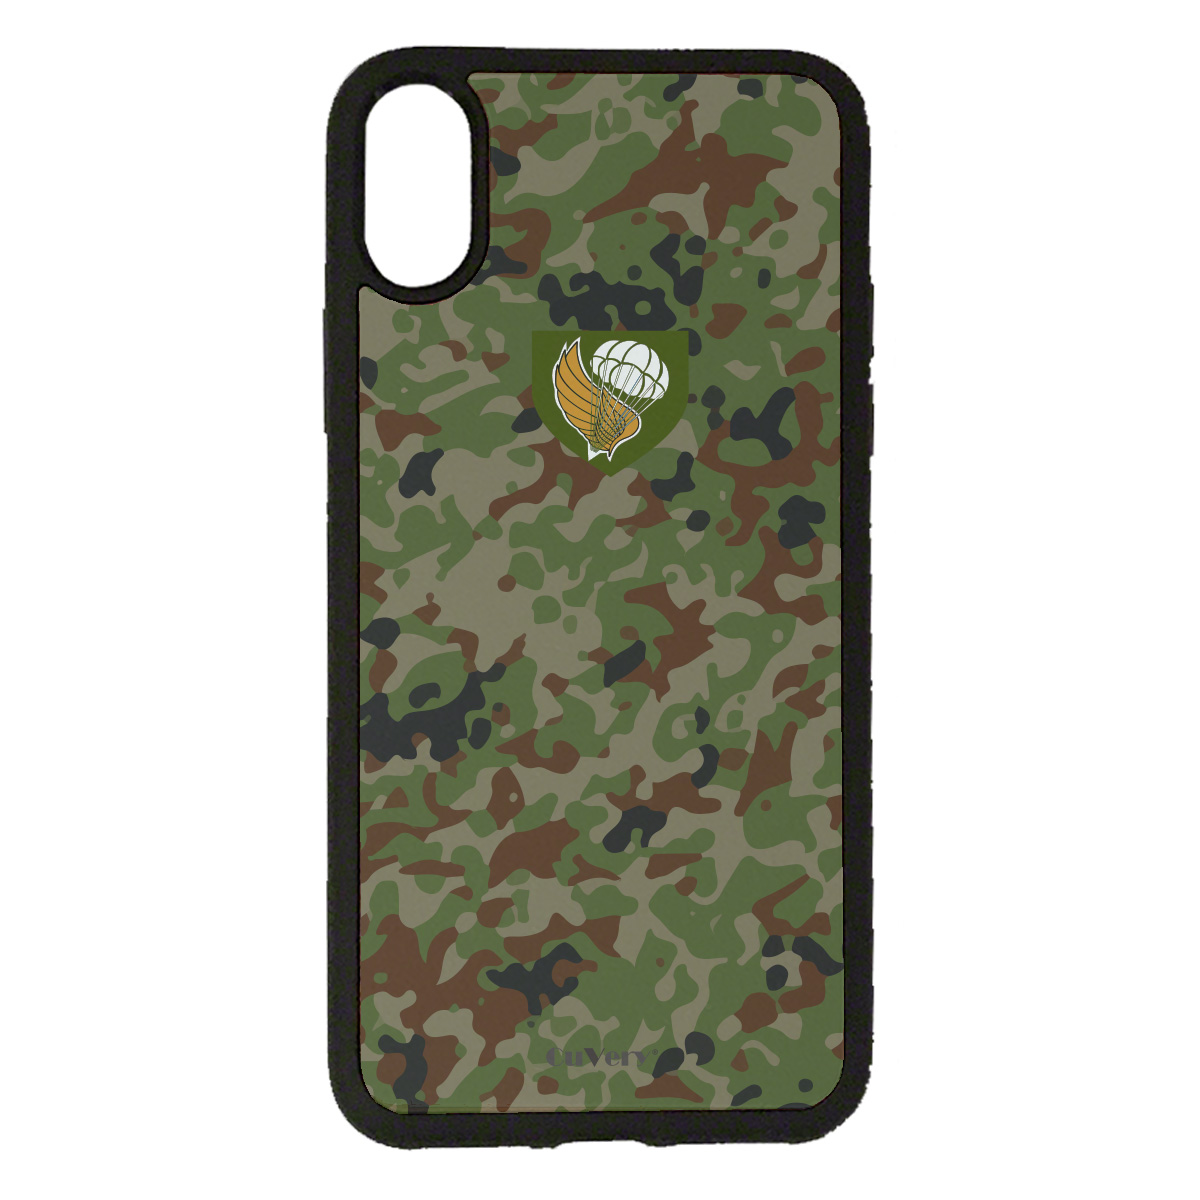 iPhoneX iPhoneXS 対応 CuVery くっつくケース セルフィー 保護 カバー 迷彩 陸上自衛隊 第一空挺団